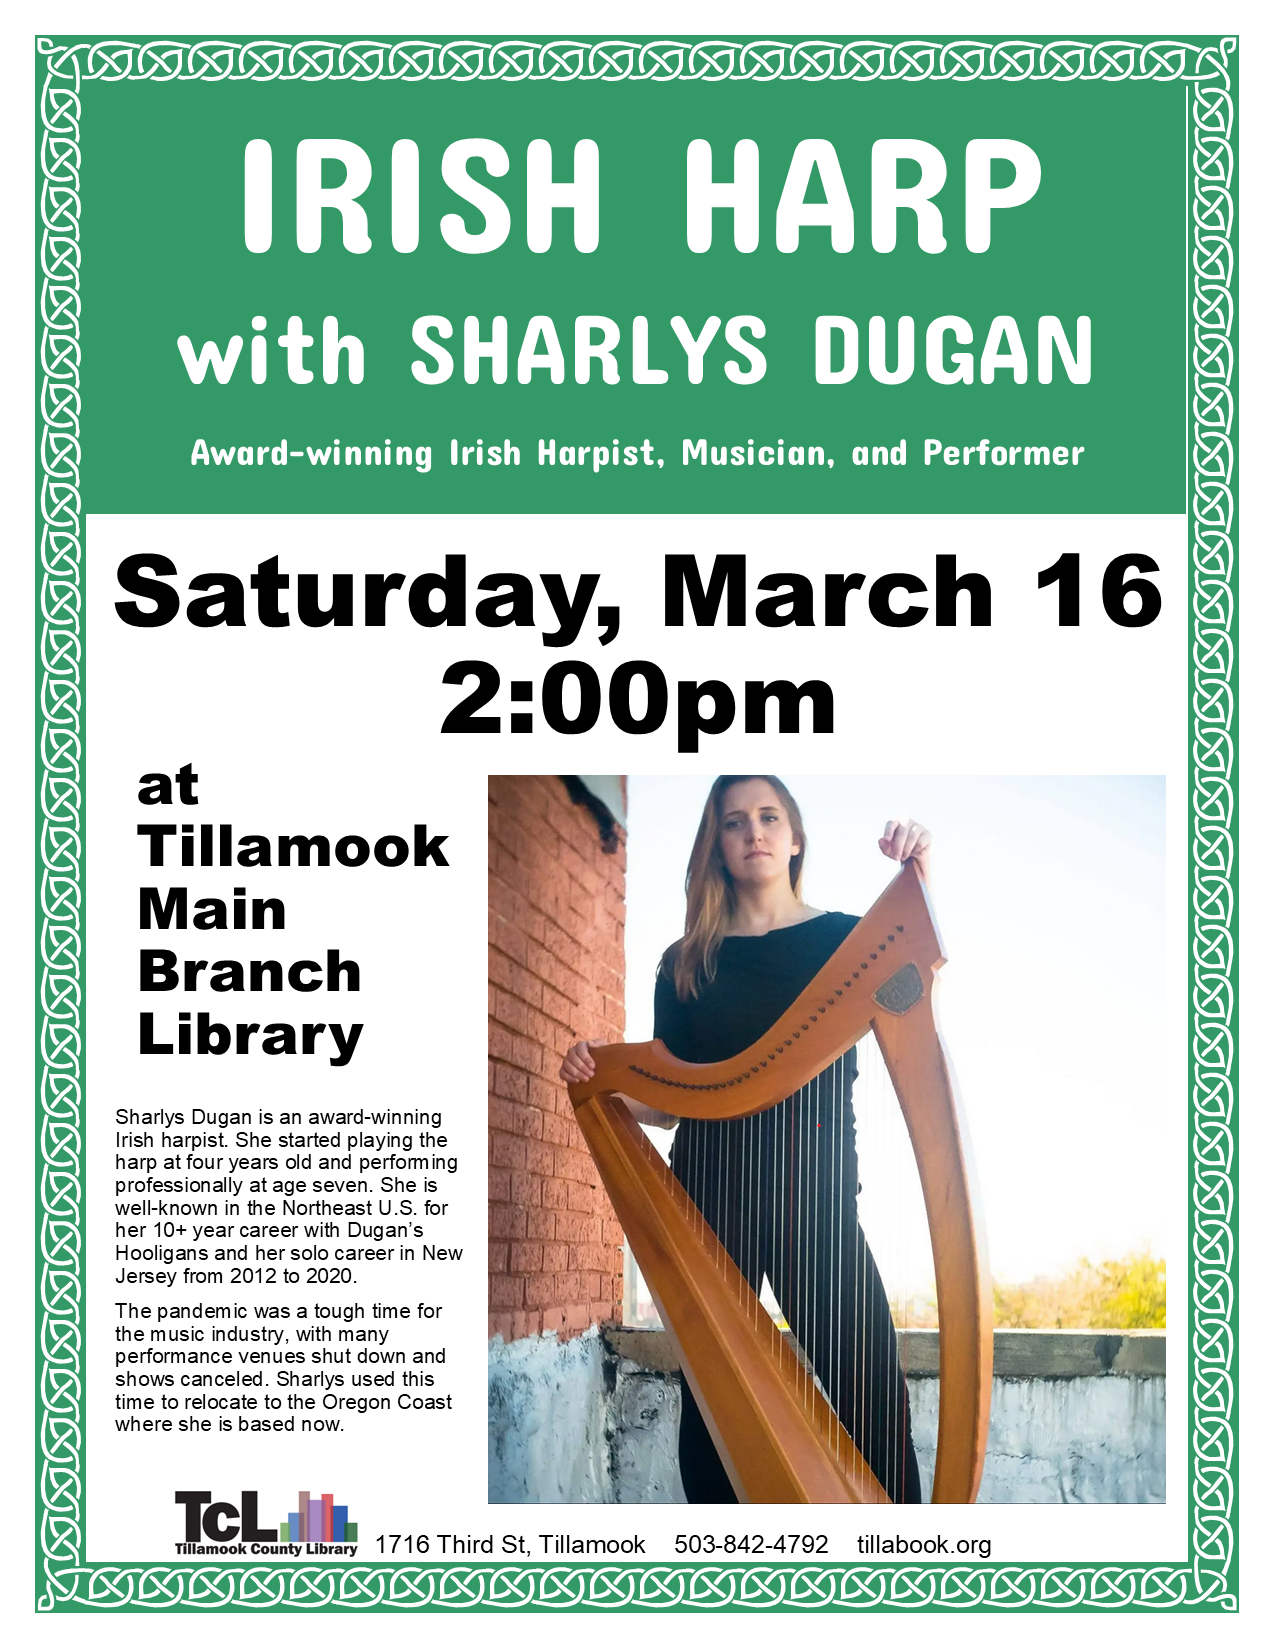 Irish Harp Sharlys Dugan Tillamook Zu1dpN.tmp